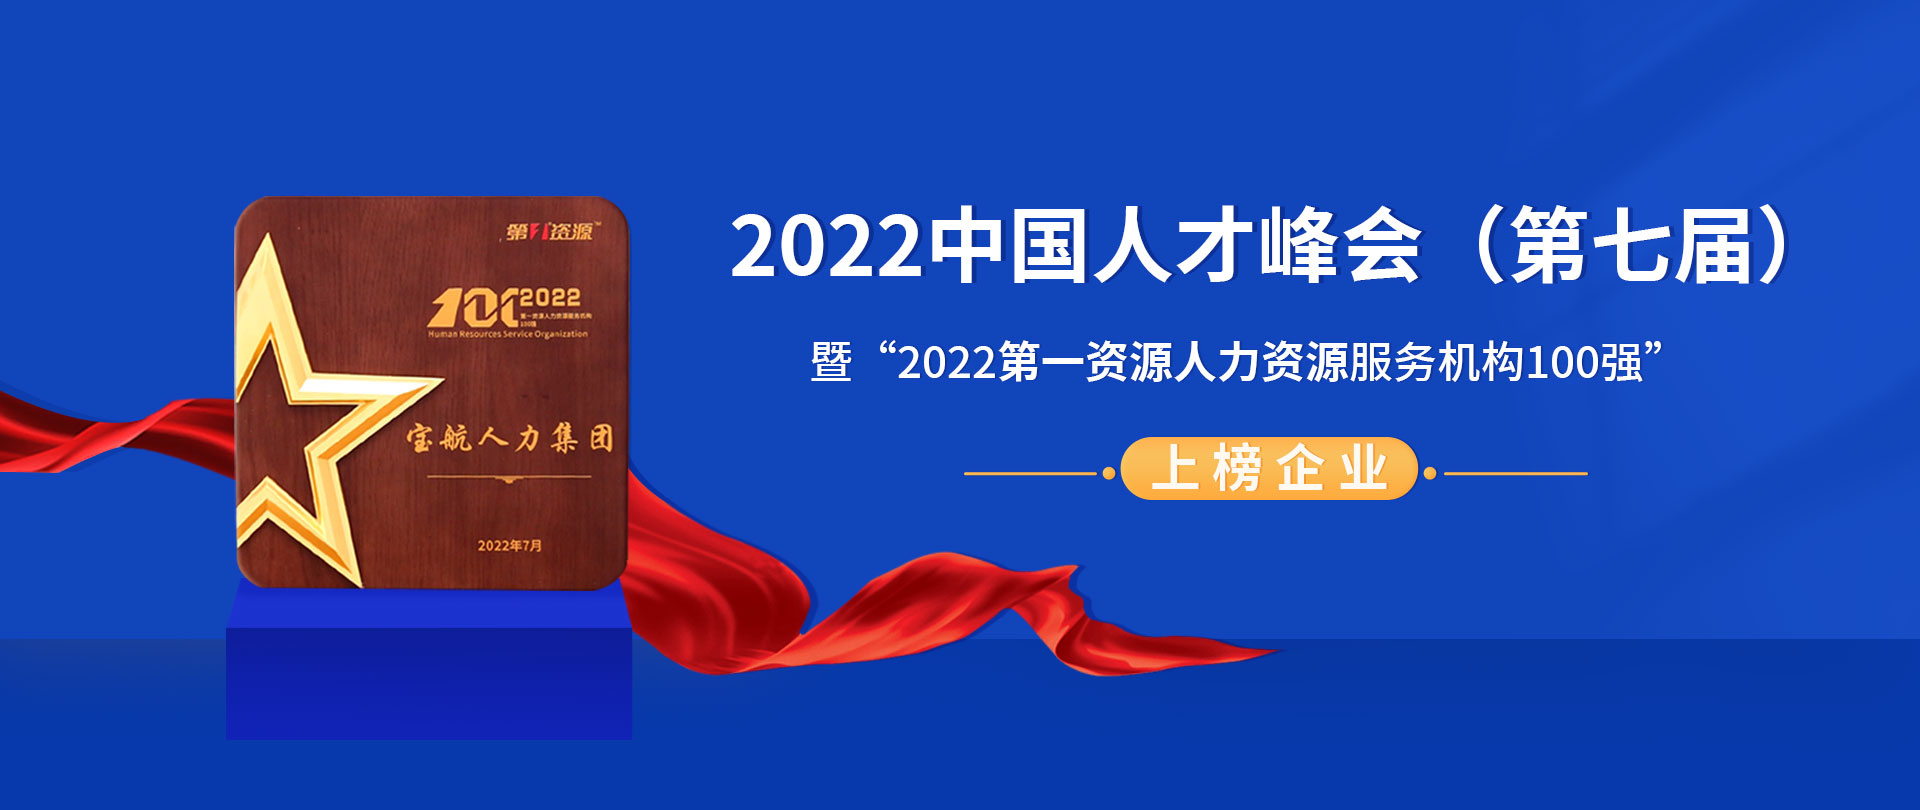 2022中国人才峰会（第七届）暨“2022第一资源人力资源服务机构100强”